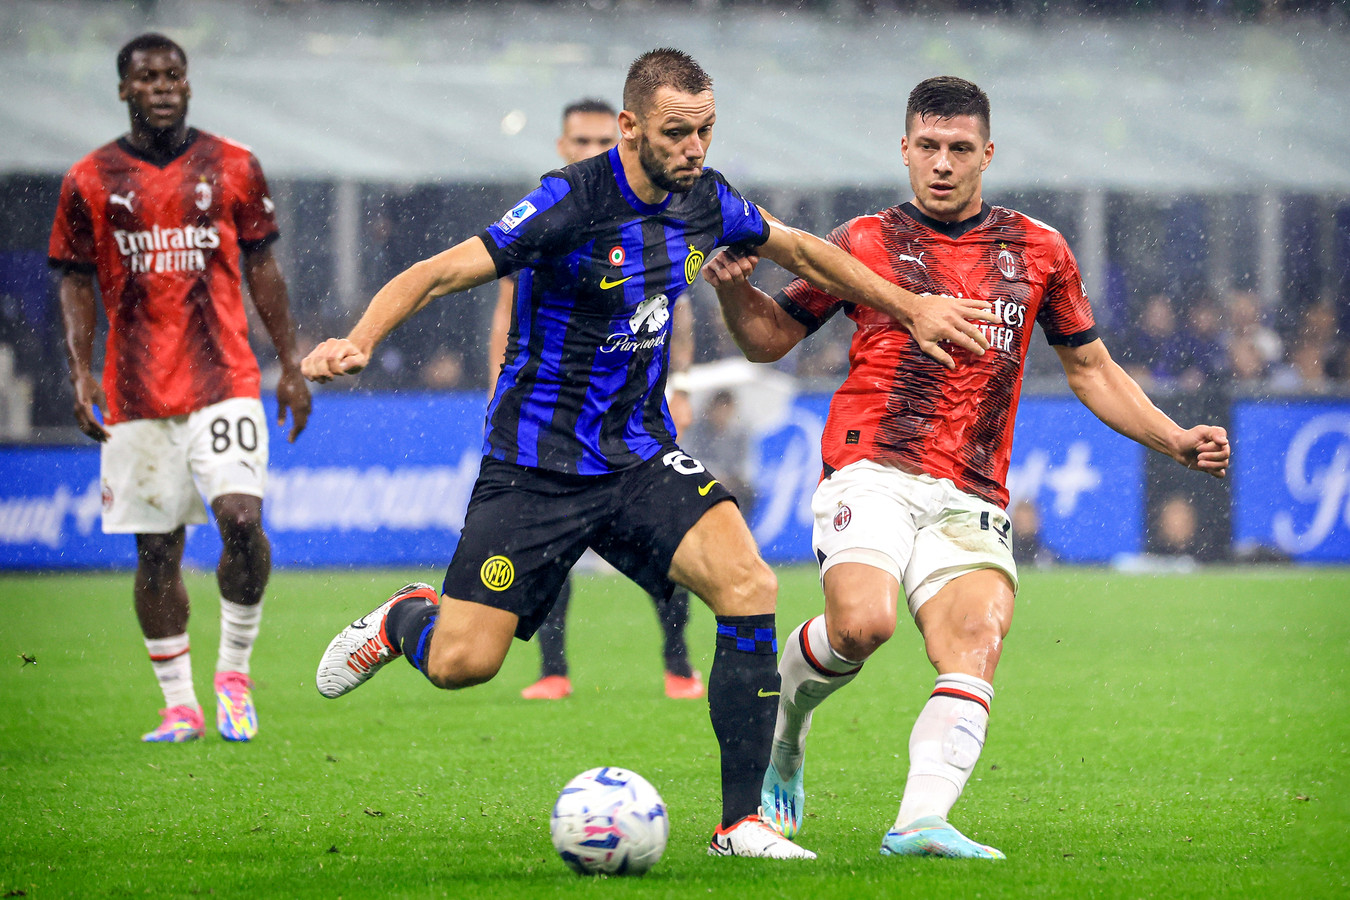 Hollands' kampioenstrio in Milaan kan landstitel met Inter vanavond  veroveren in derby | Foto | AD.nl